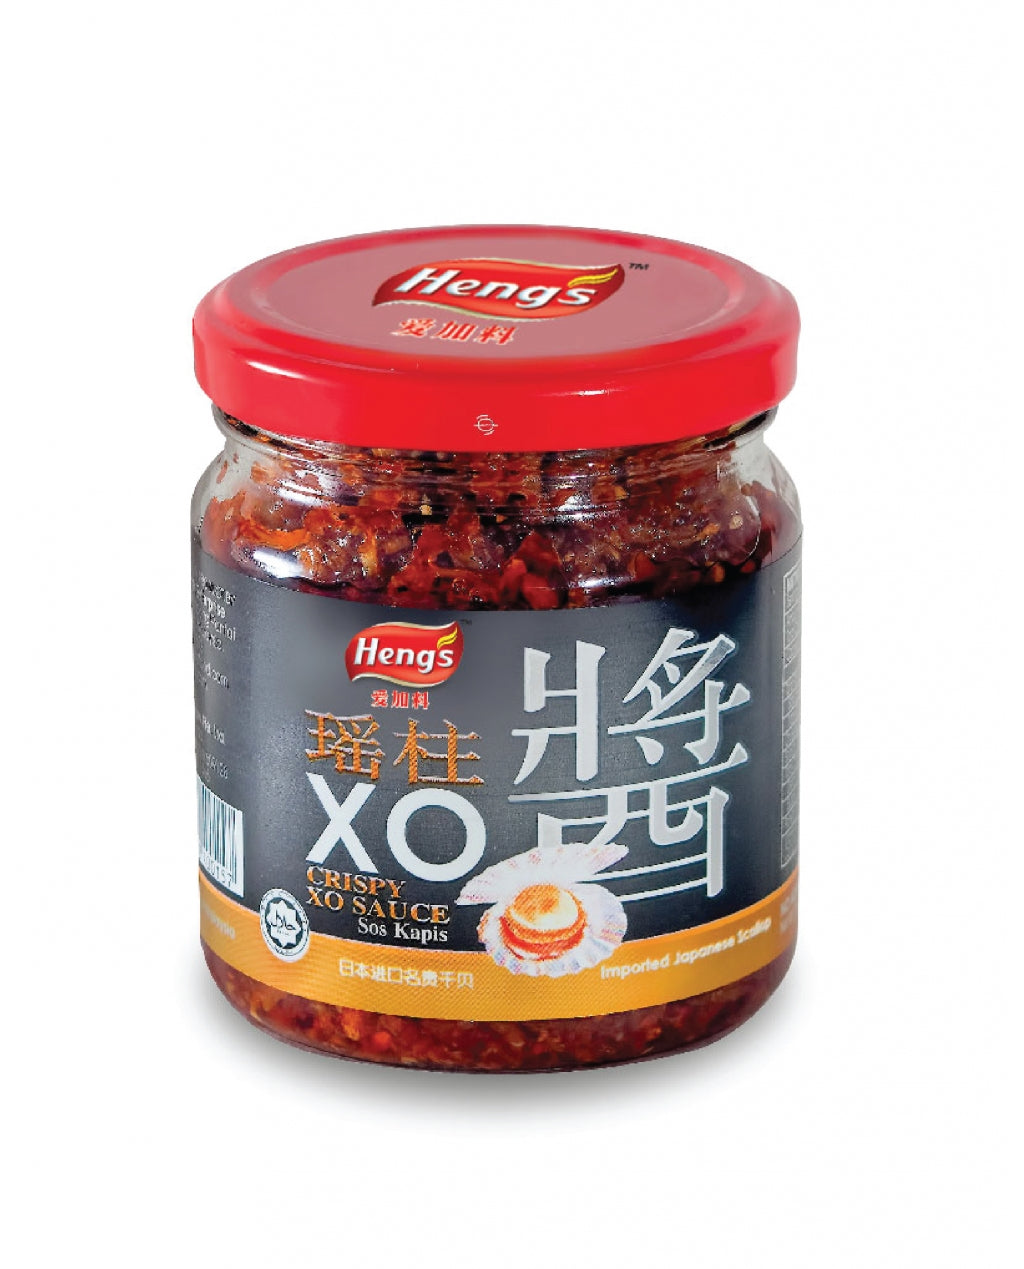 Heng's Crispy XO Sauce 180g